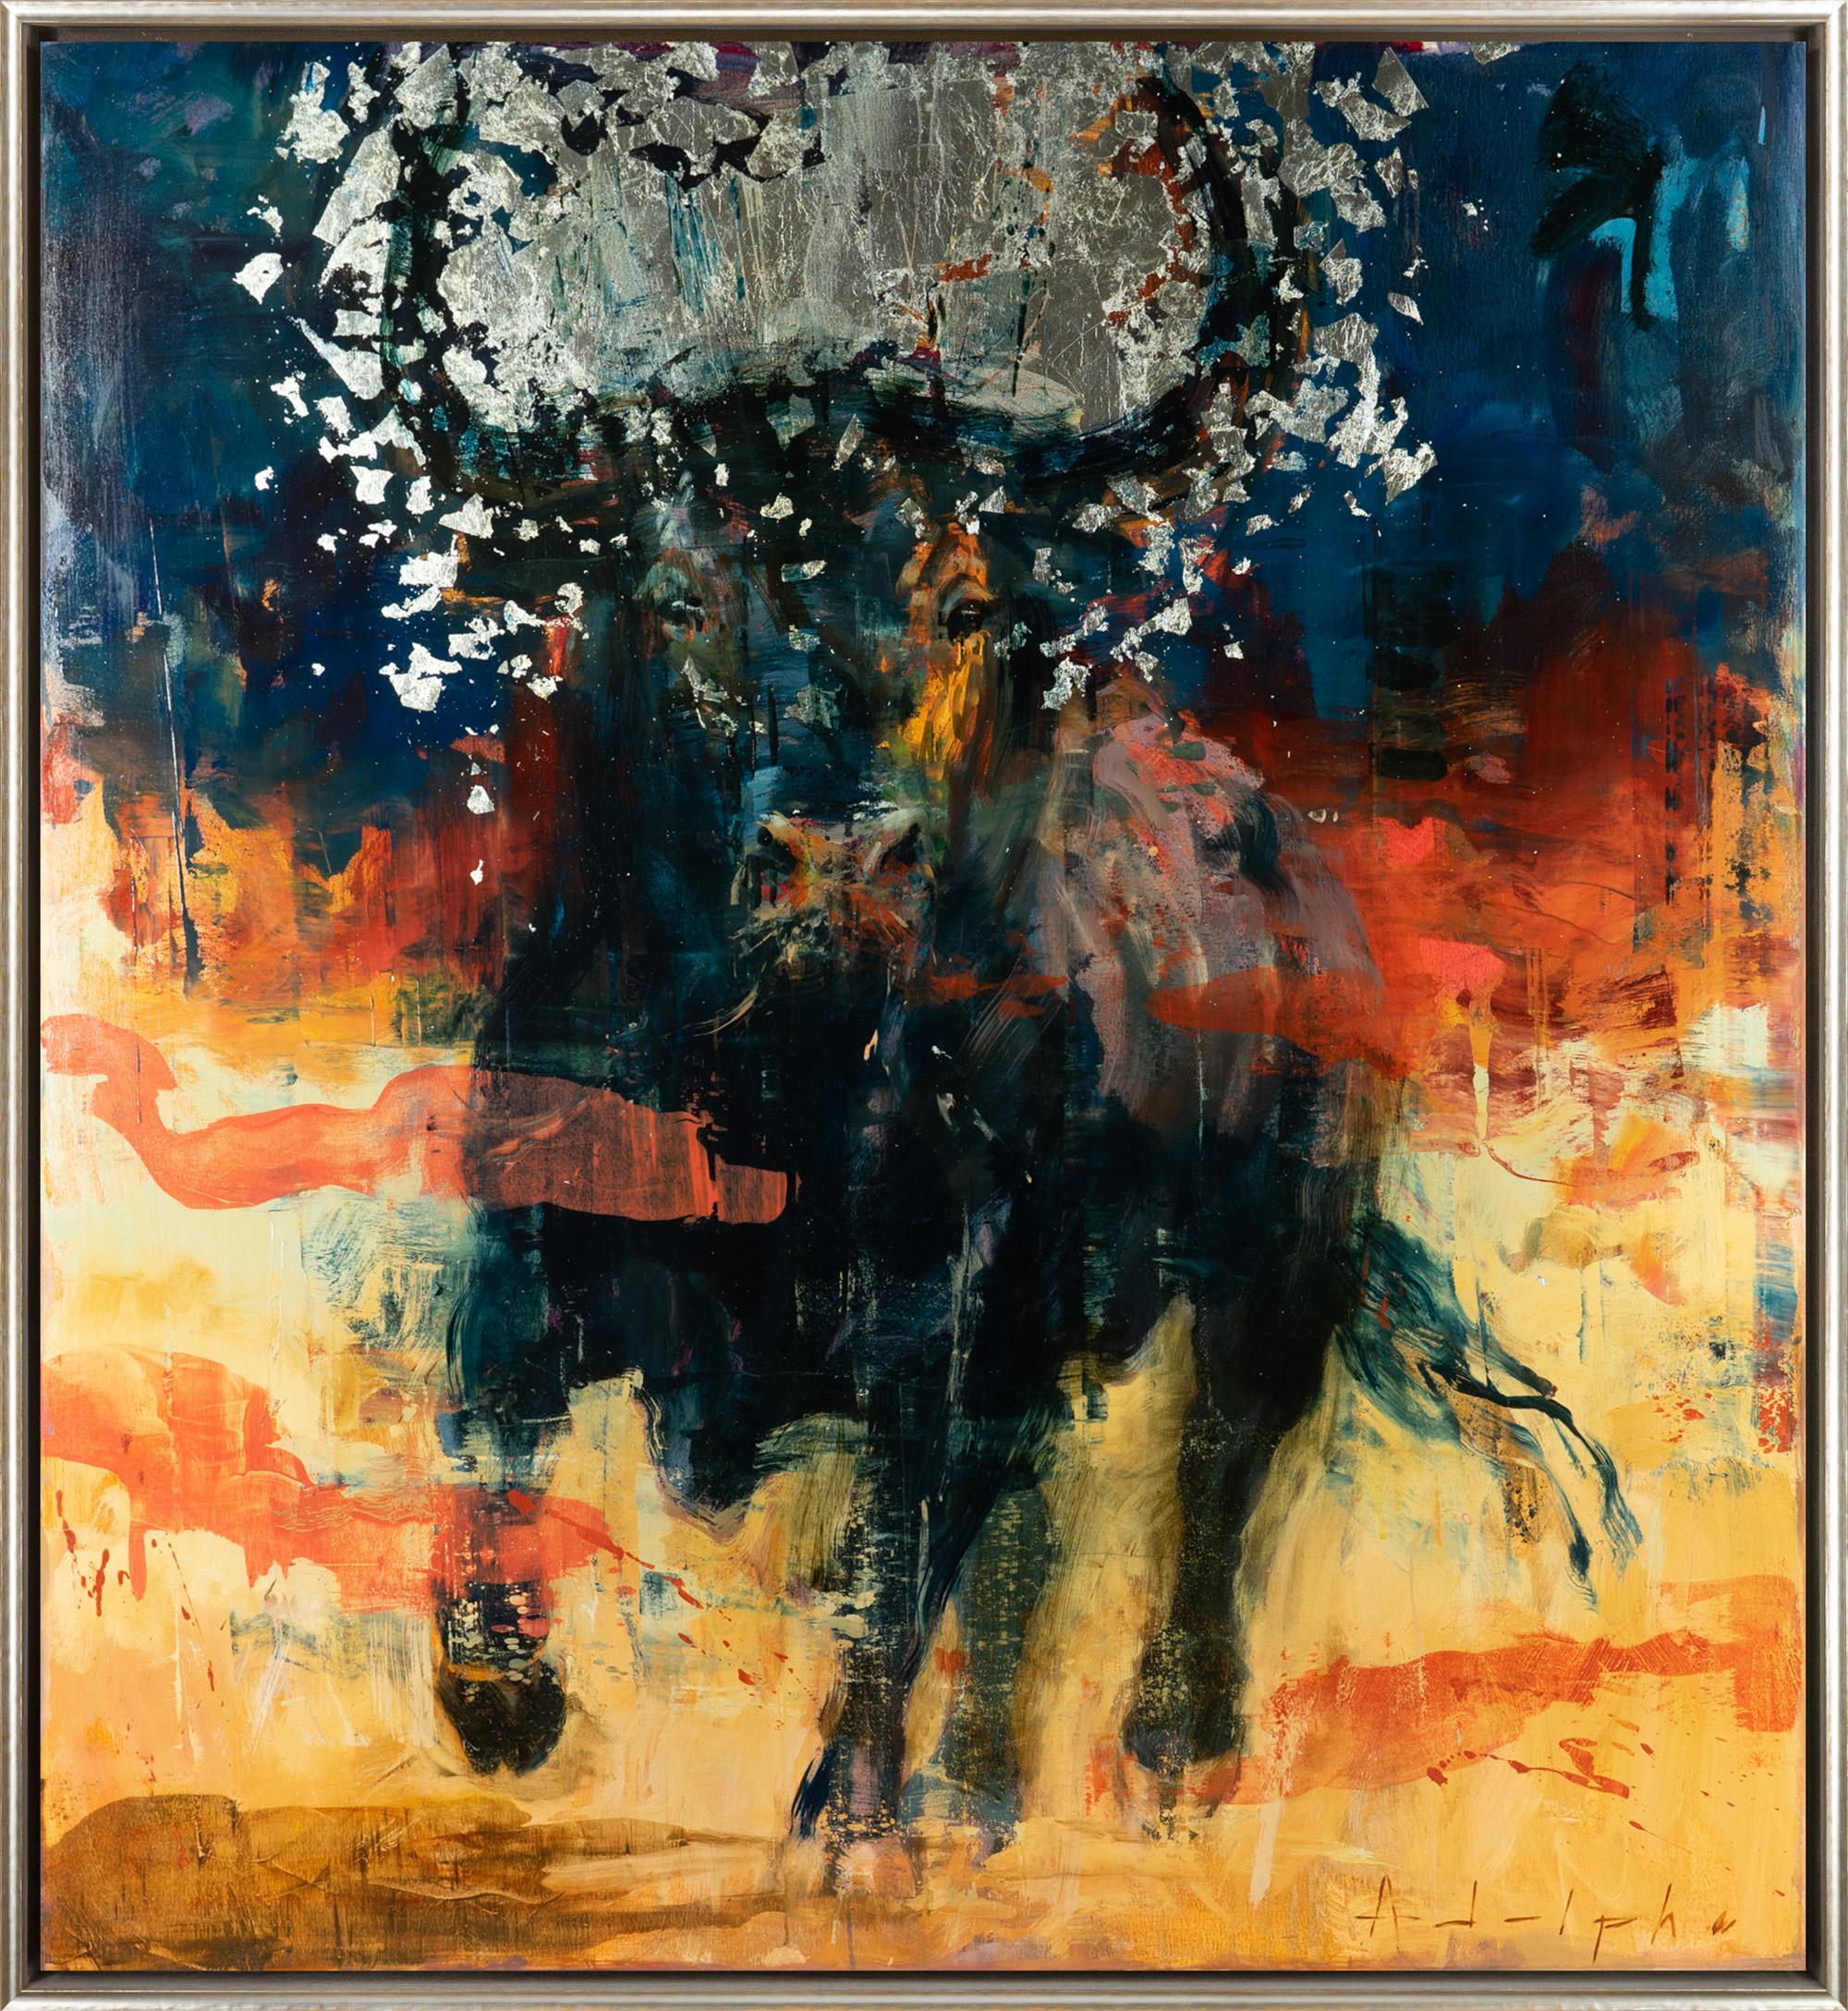 "Toro Bravo No. 51" Abstract Metallic Bull Mixed Media on Canvas Painting - Mixed Media Art by Joseph Adolphe